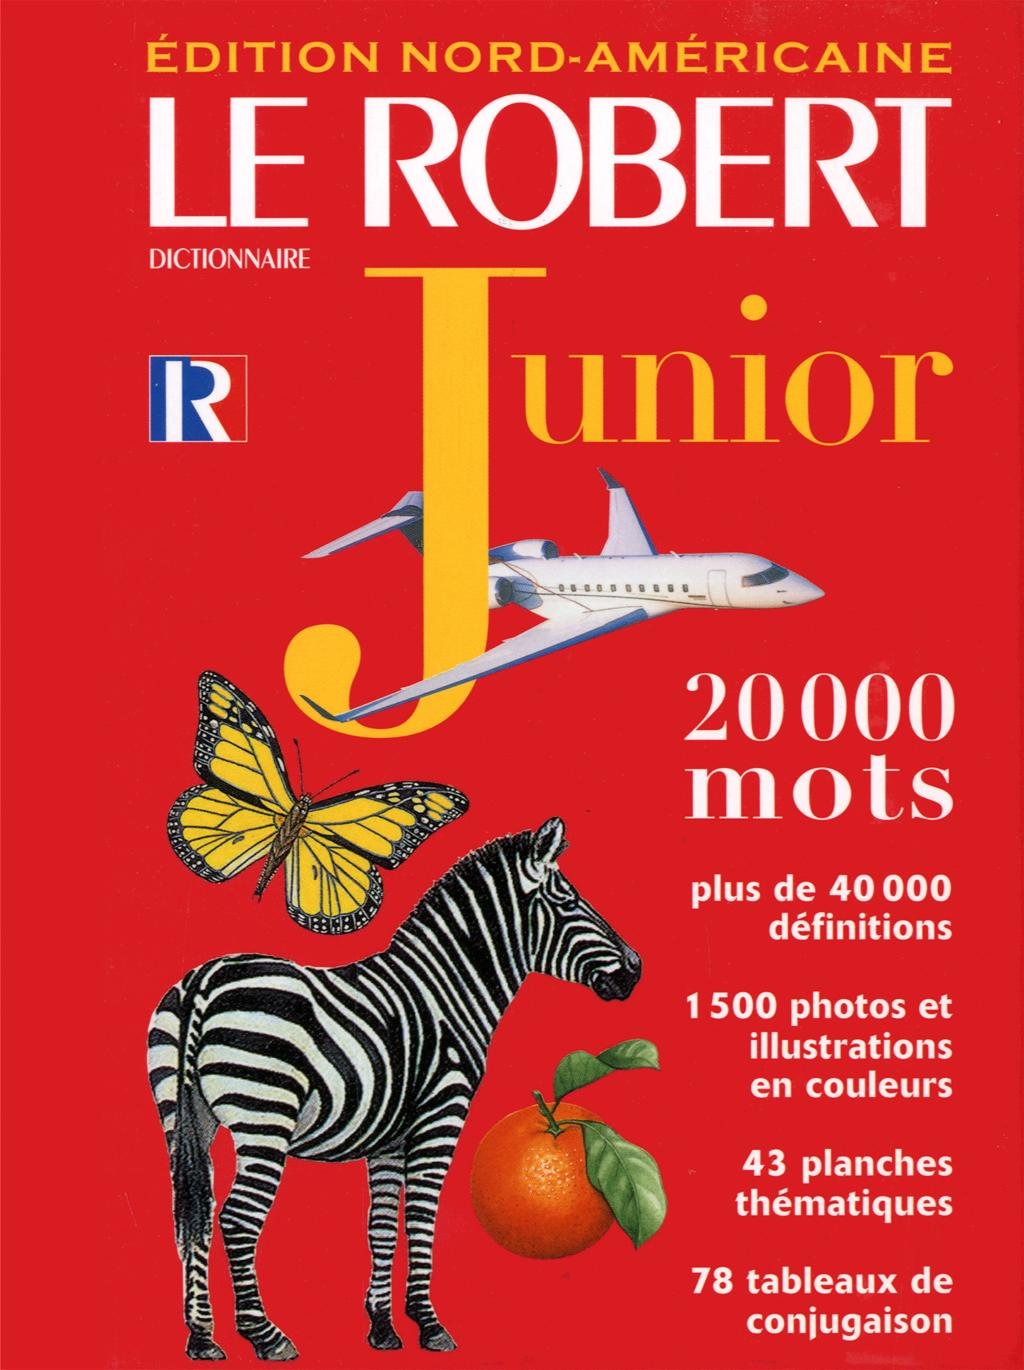 Livre ISBN 2850366811 Le Robert Junior (Édition Nord-Américaine)